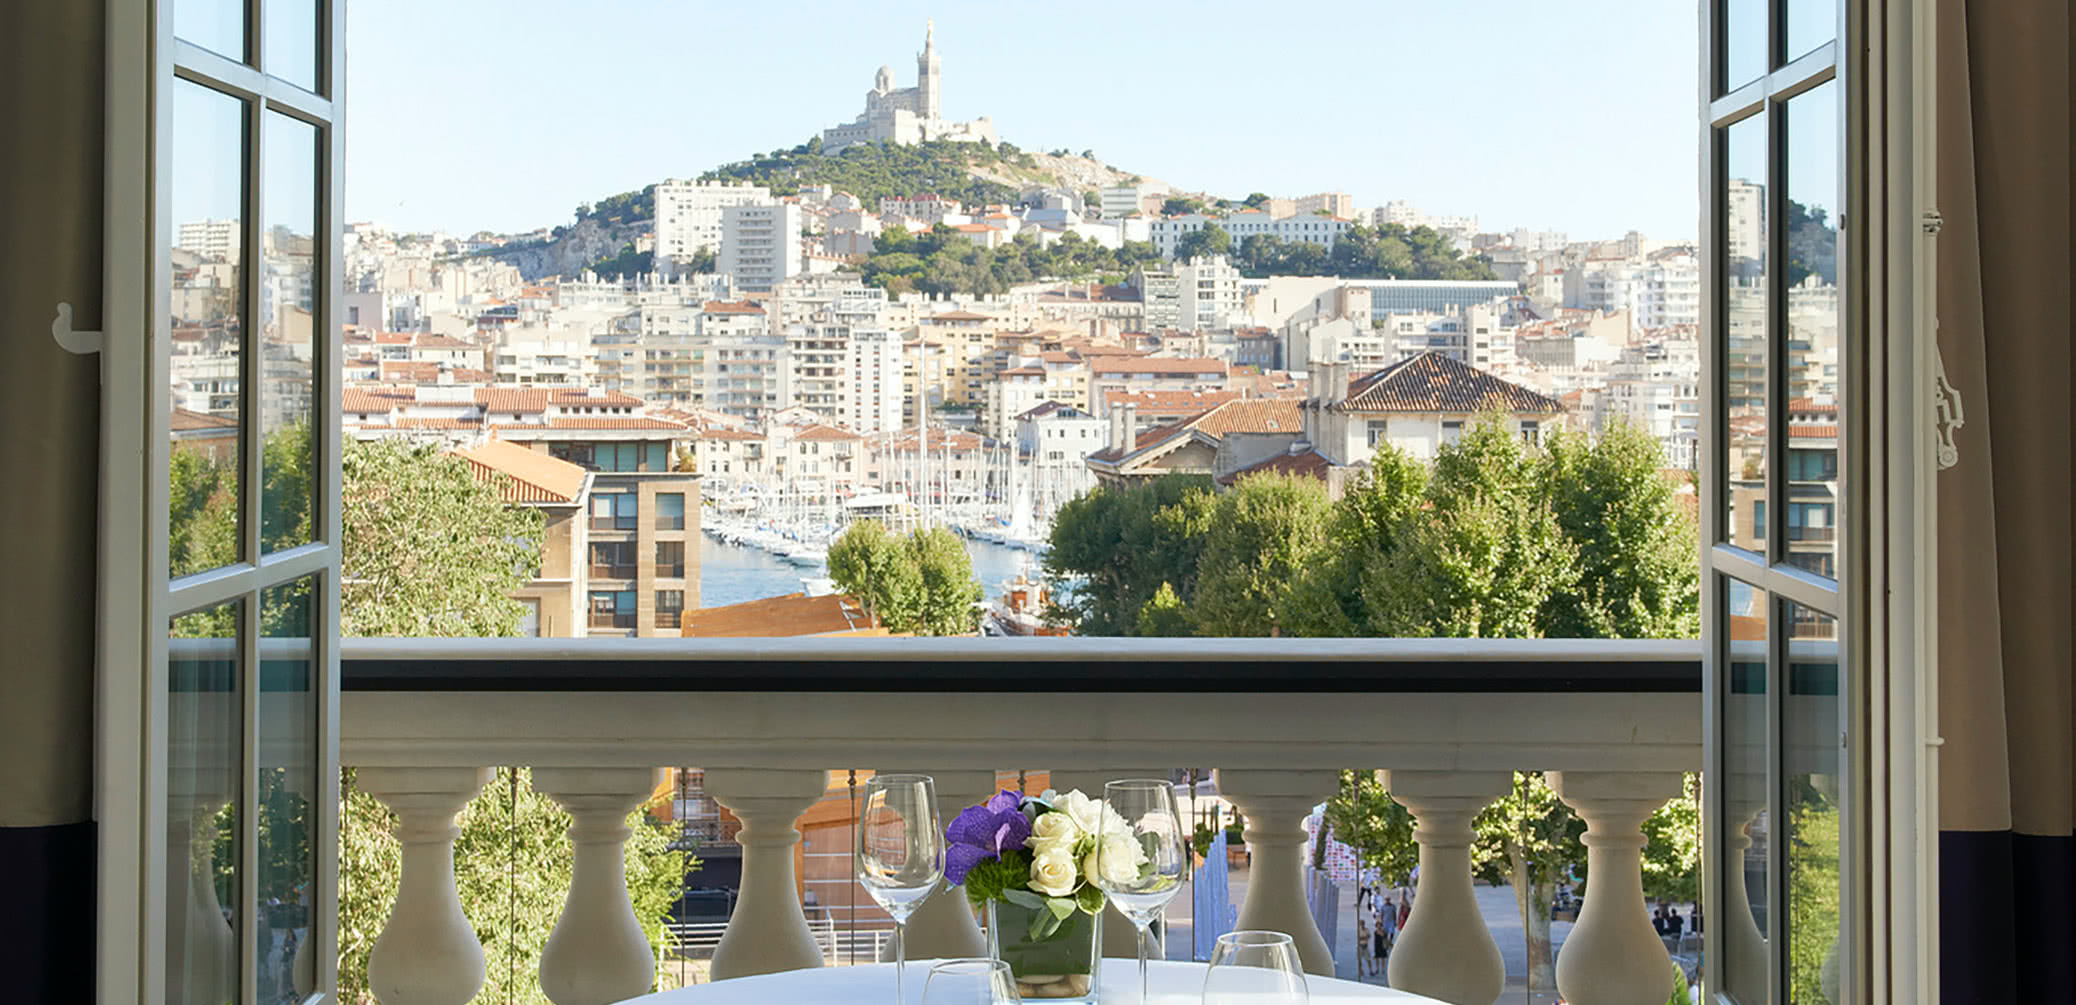 10 Best IHG Hotels In Europe